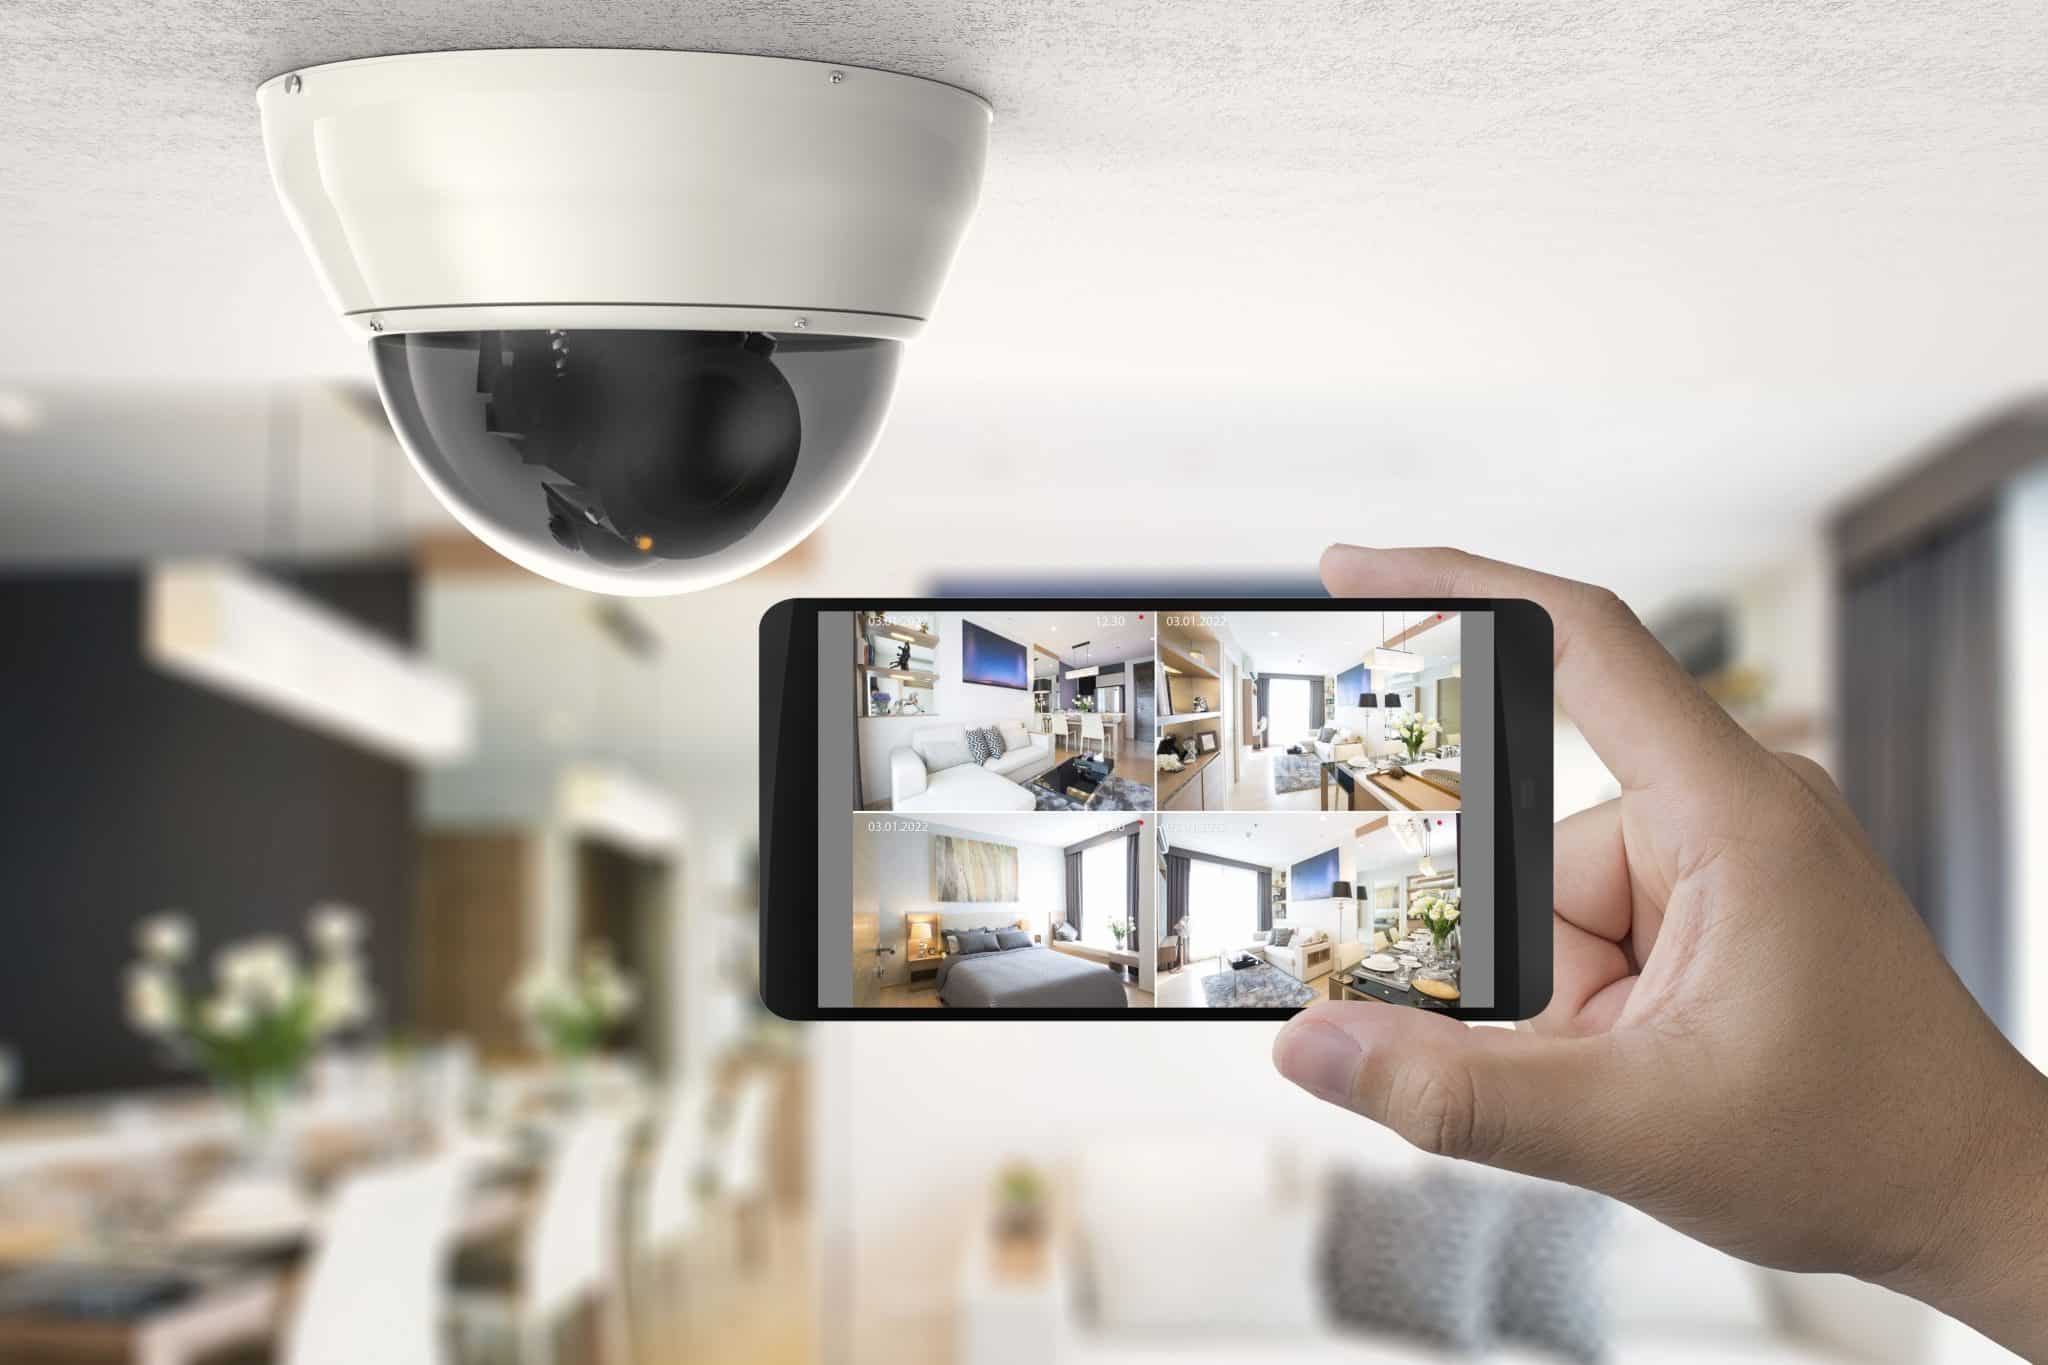 How do you keep your home security cameras safe?